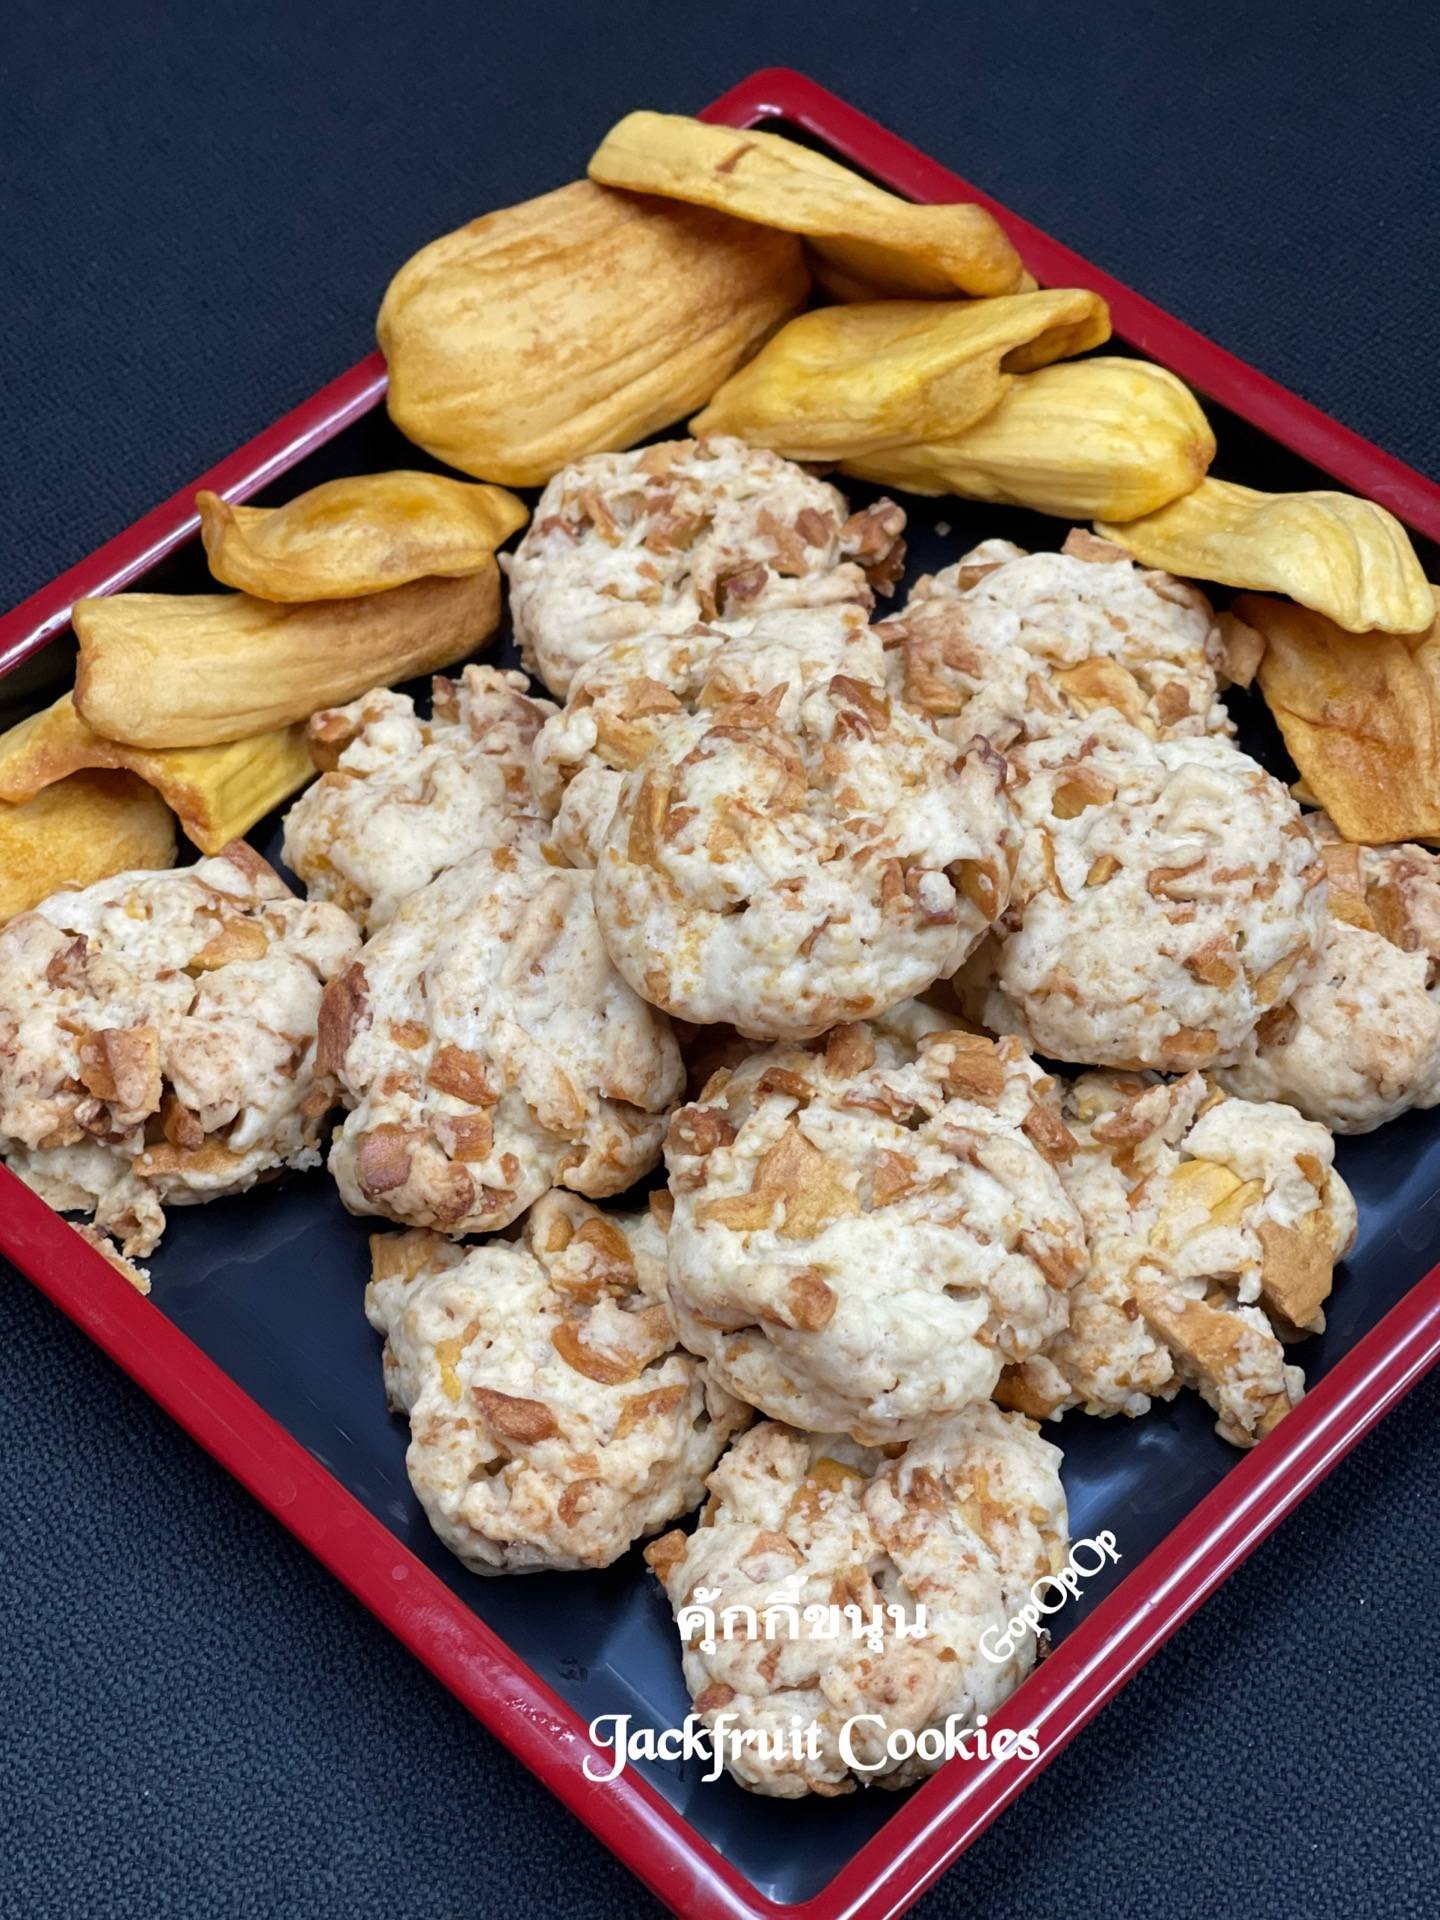 คุ้กกี้ขนุน Jackfruit Cookies By ครูหนวดตัวร้ายกับยัยตัวยุ่ง  เมนูอาหารว่าง